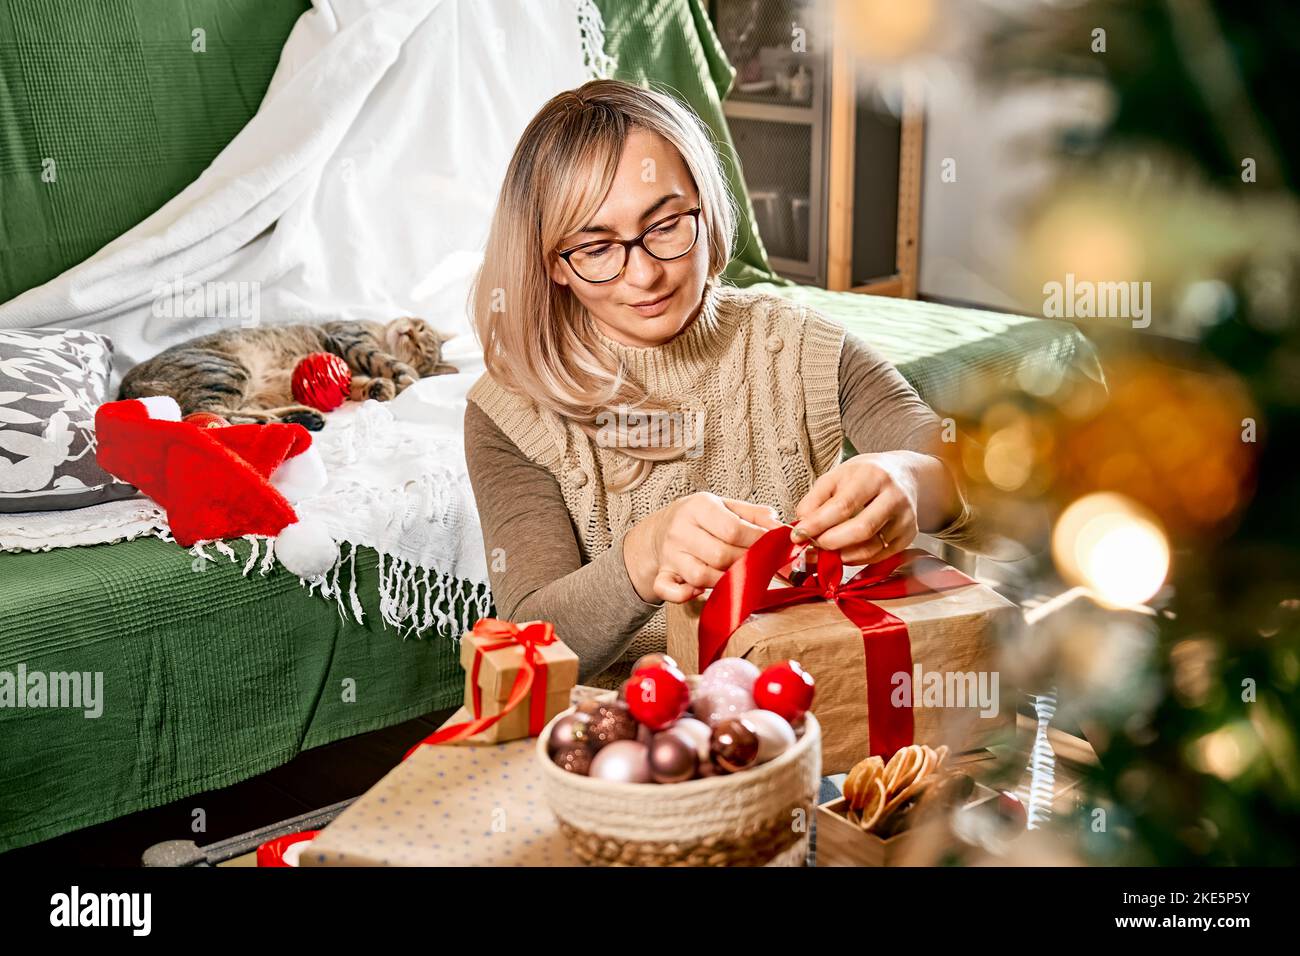 Geschenkverpackung von weihnachtsgeschenken. Blonde Frau Verpackung Geschenk in Recycling-Karte und dekorieren es mit rotem Band, getrocknete Orangen und Tannenzweige in der Nähe der Chris Stockfoto